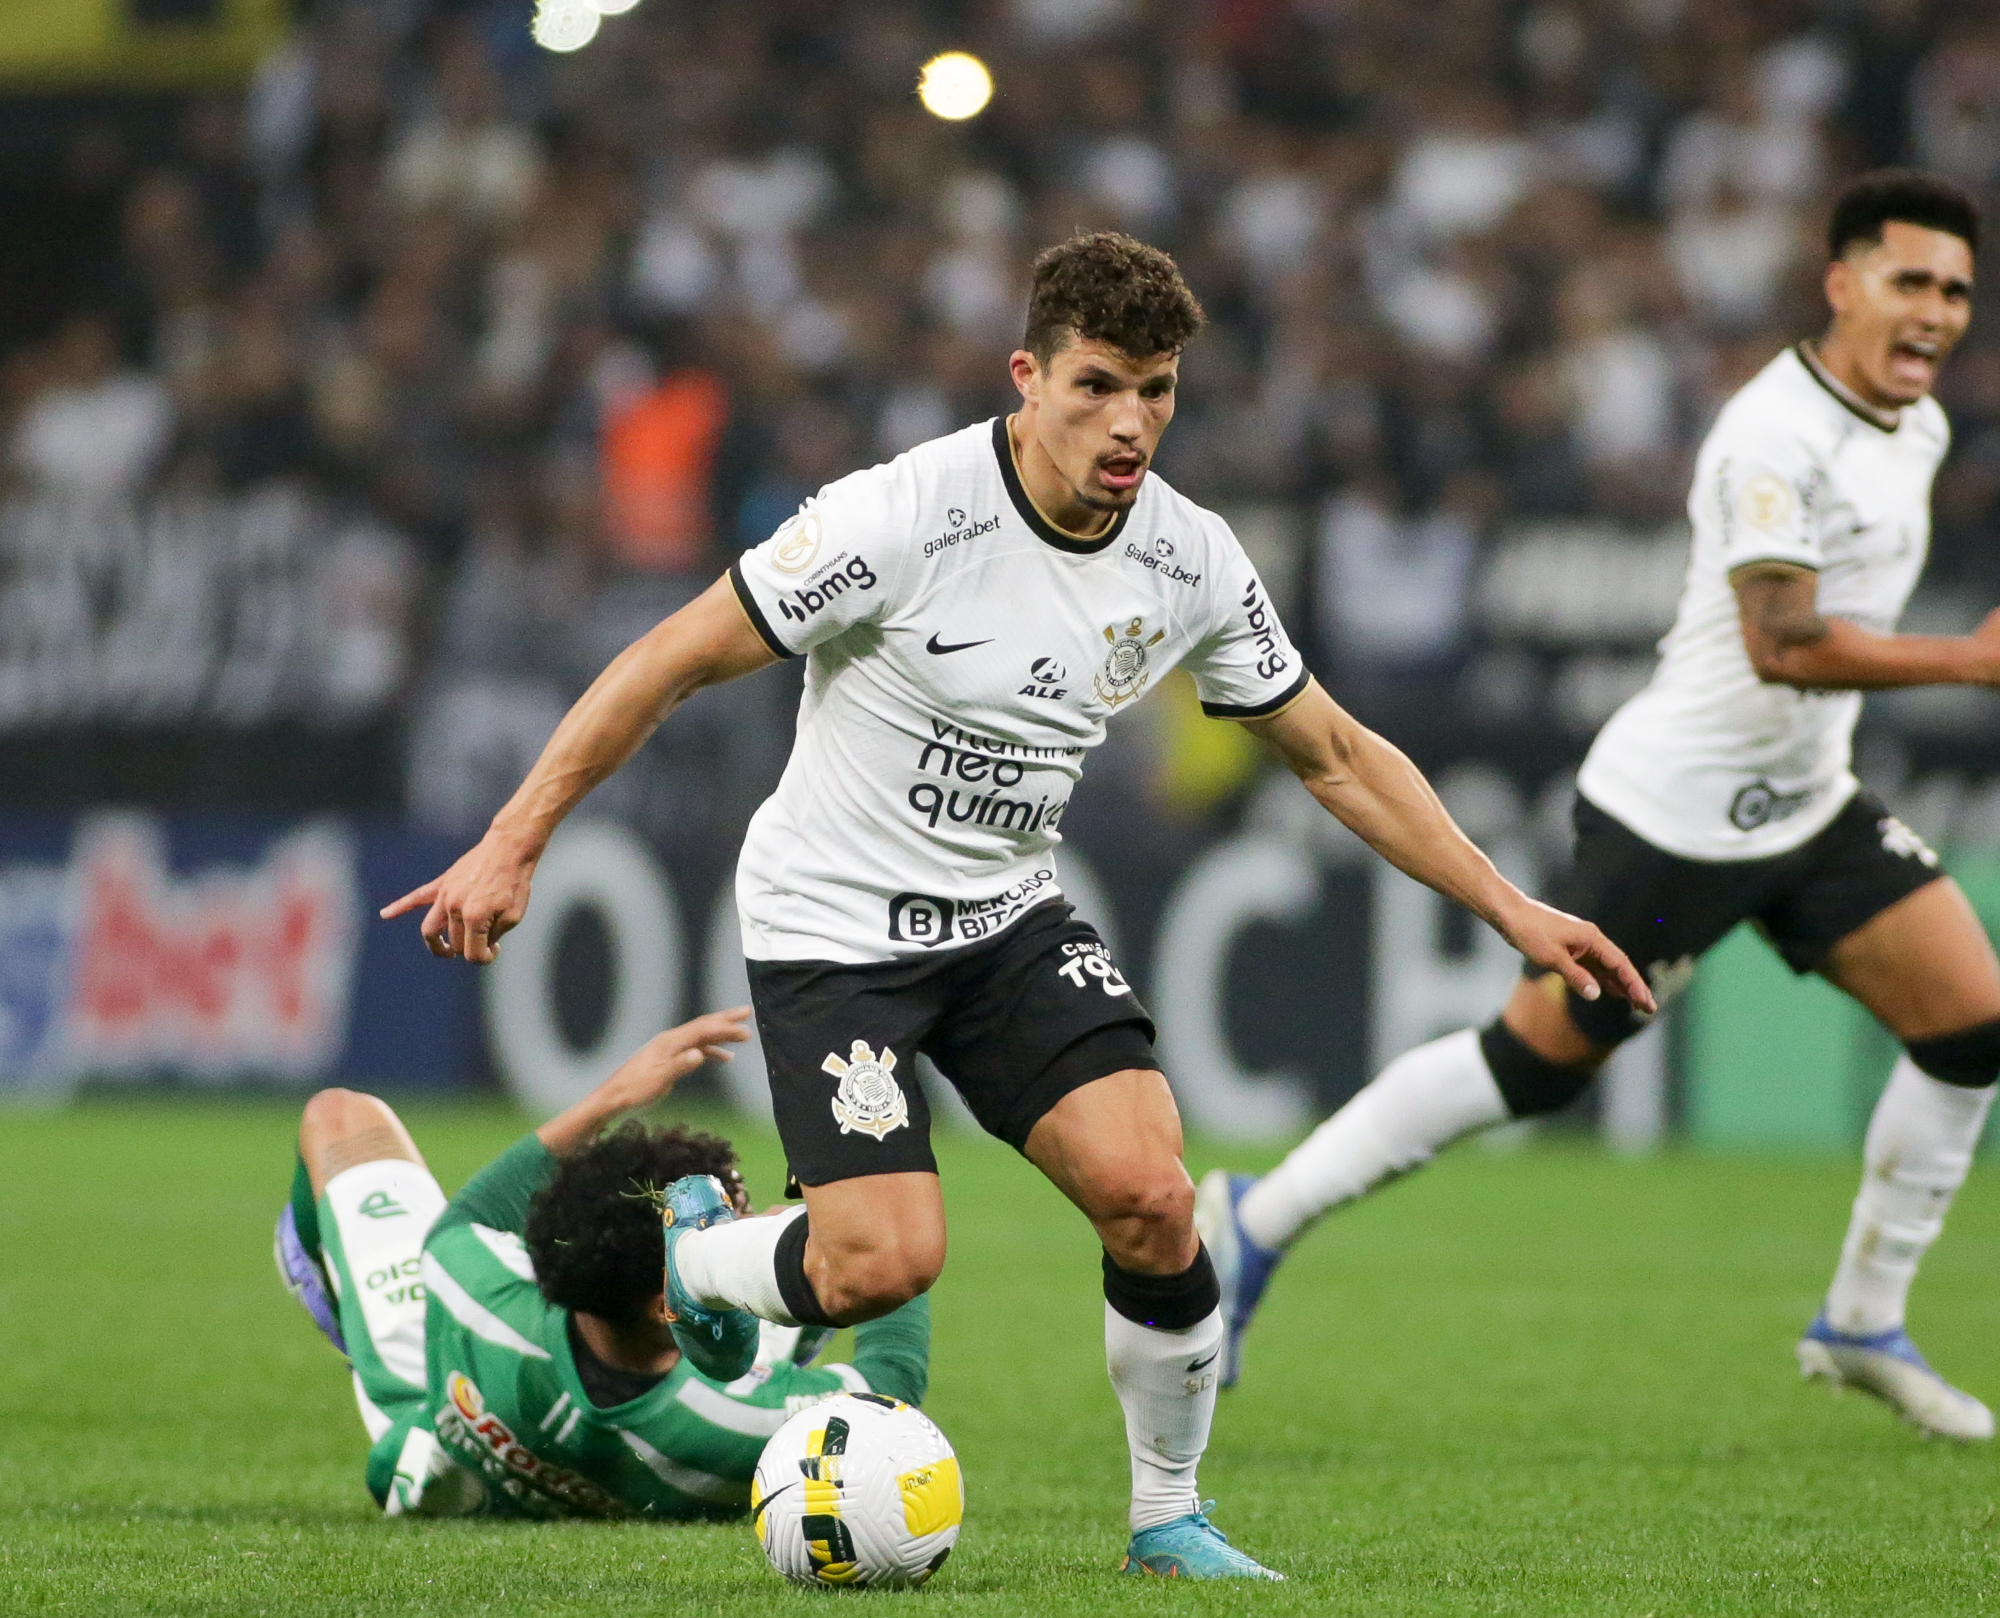 Com gol no final, Chapecoense vira e bate o Corinthians pela 1ª vez na  história